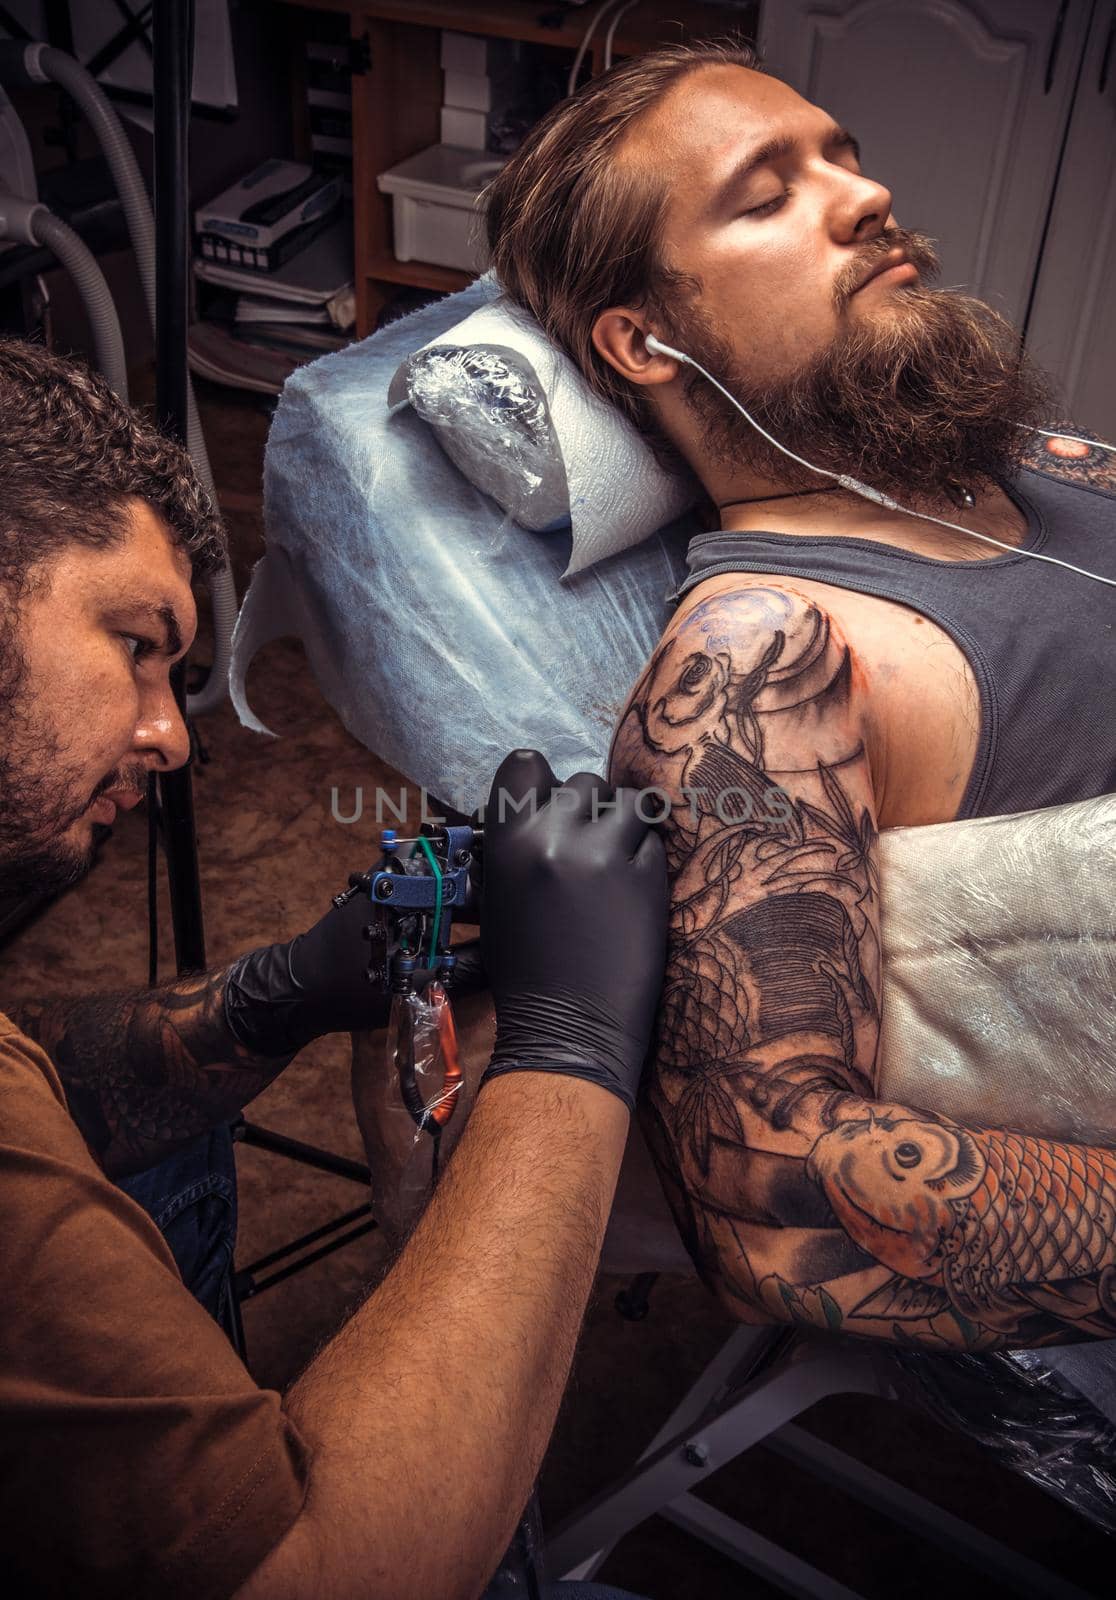 Tattoo specialist working tattooing in tattoo studio by Proff